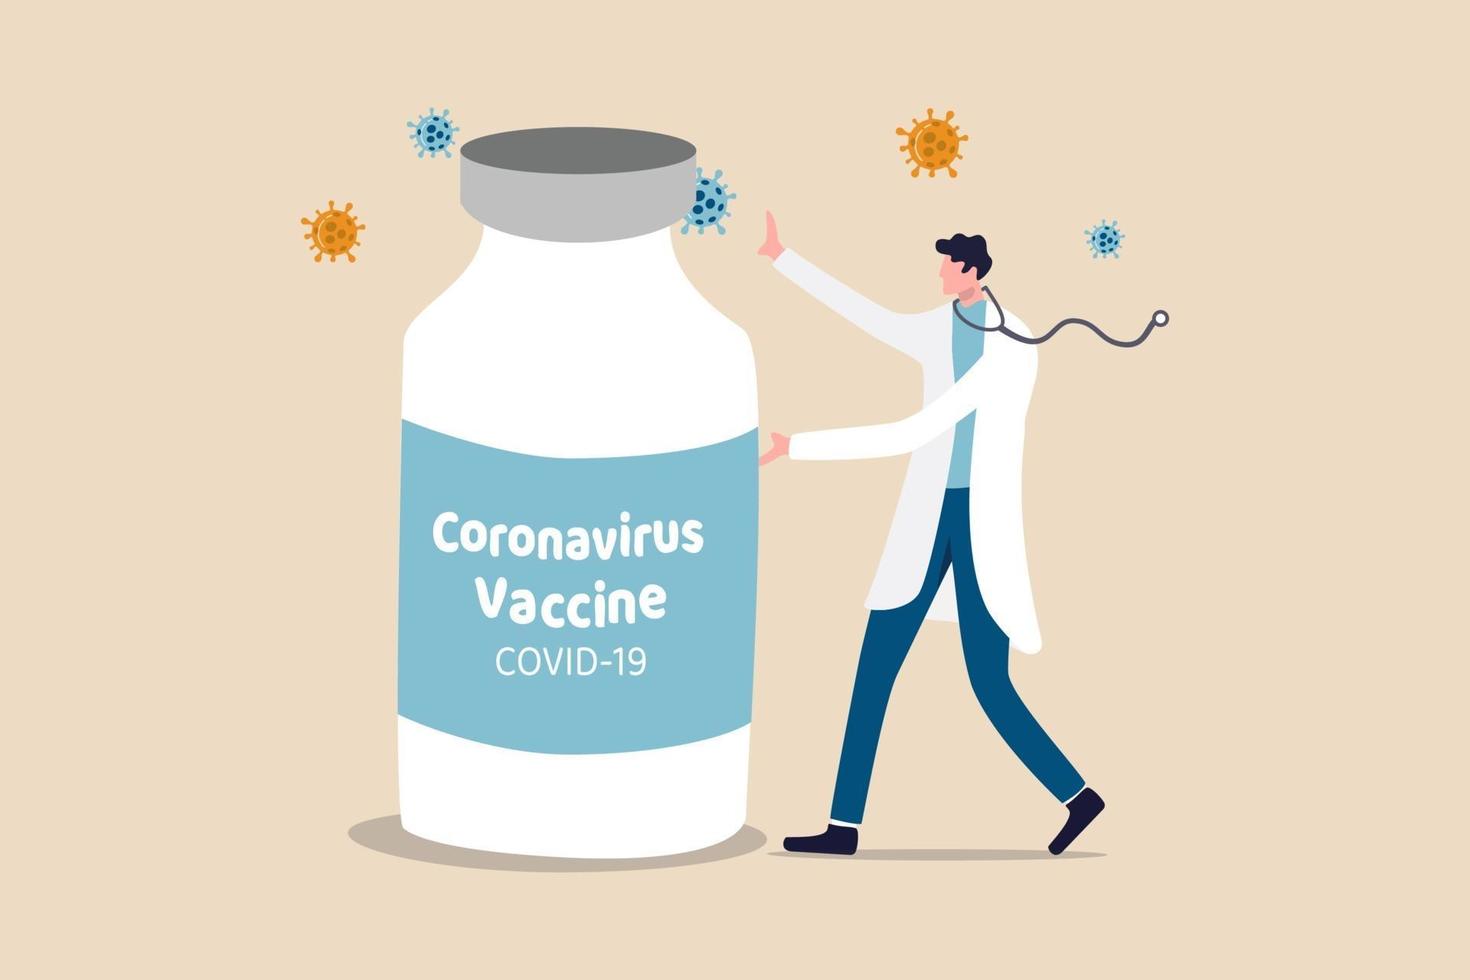 Entdeckung des Coronavirus-Covid-19-Impfstoffs, Medikament oder Medizin zur Heilung des Covid-19-Krankheitskonzepts, Arzt oder medizinischer Forscher, der die große Flasche des Coronavirus-Impfstoffs mit Viruspathogen vorstellt. vektor